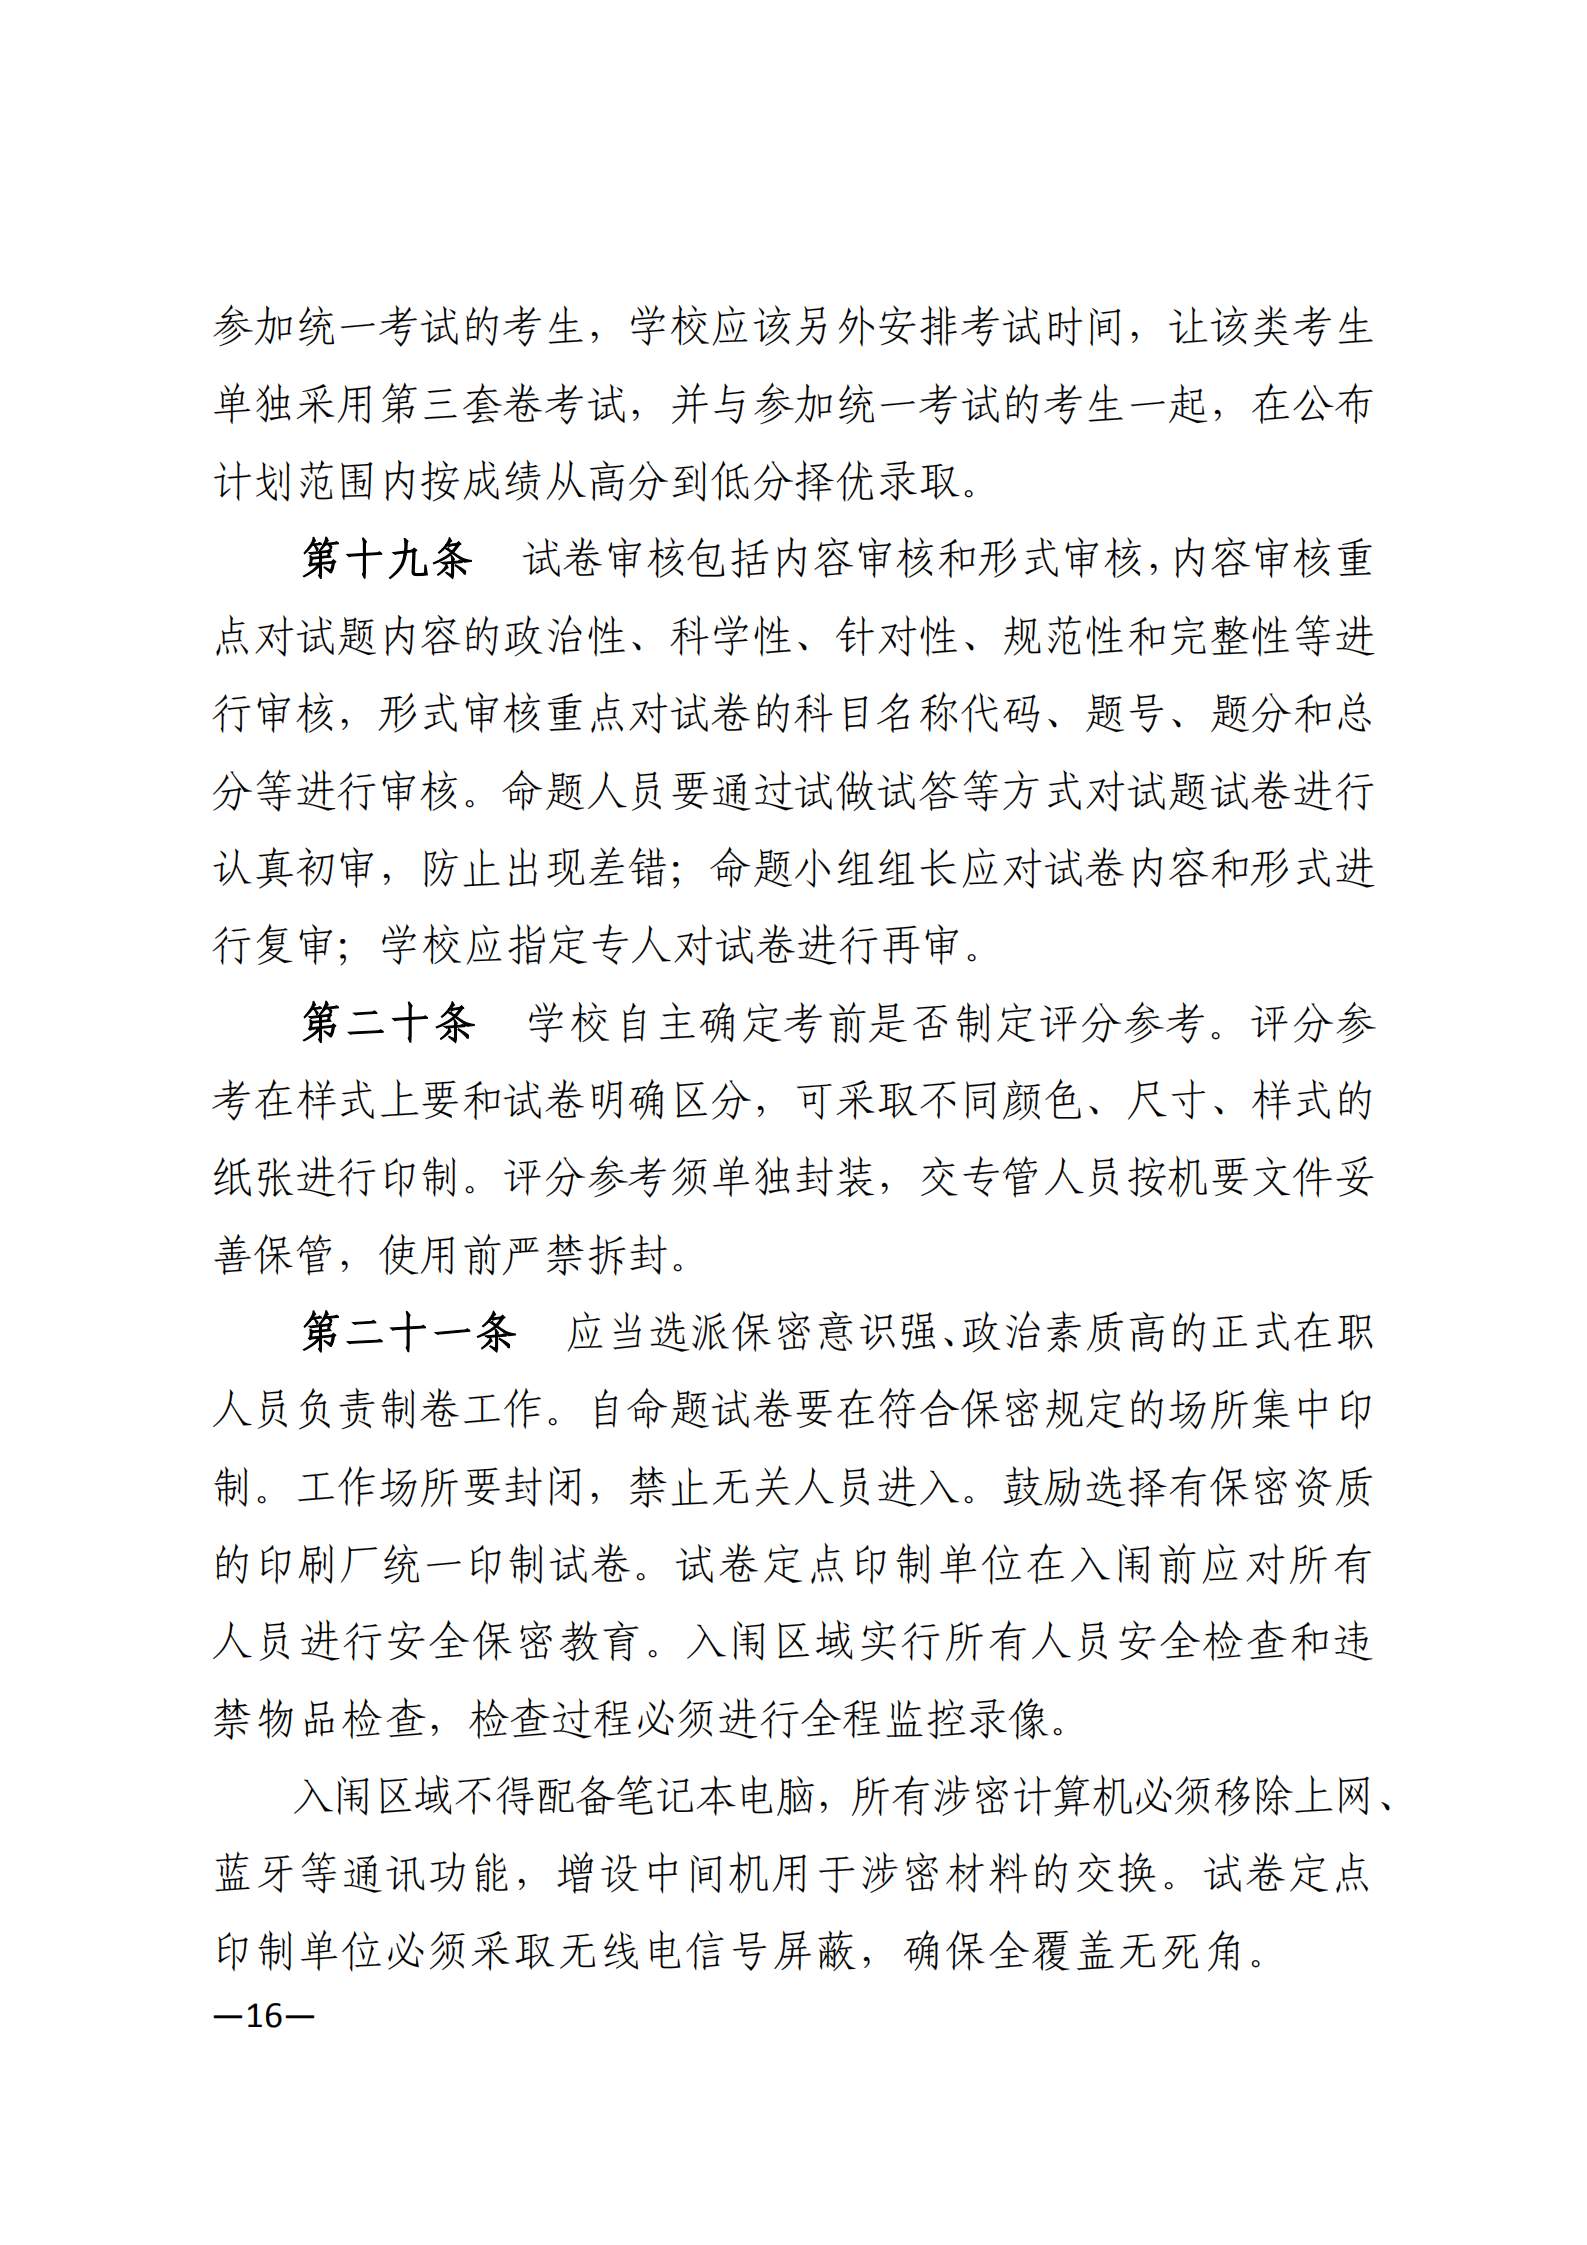 3_湘教发〔2021〕2号 关于印发《2021年湖南省普通高等教育“专升本”考试招生工作实施方案》的通知_15.png